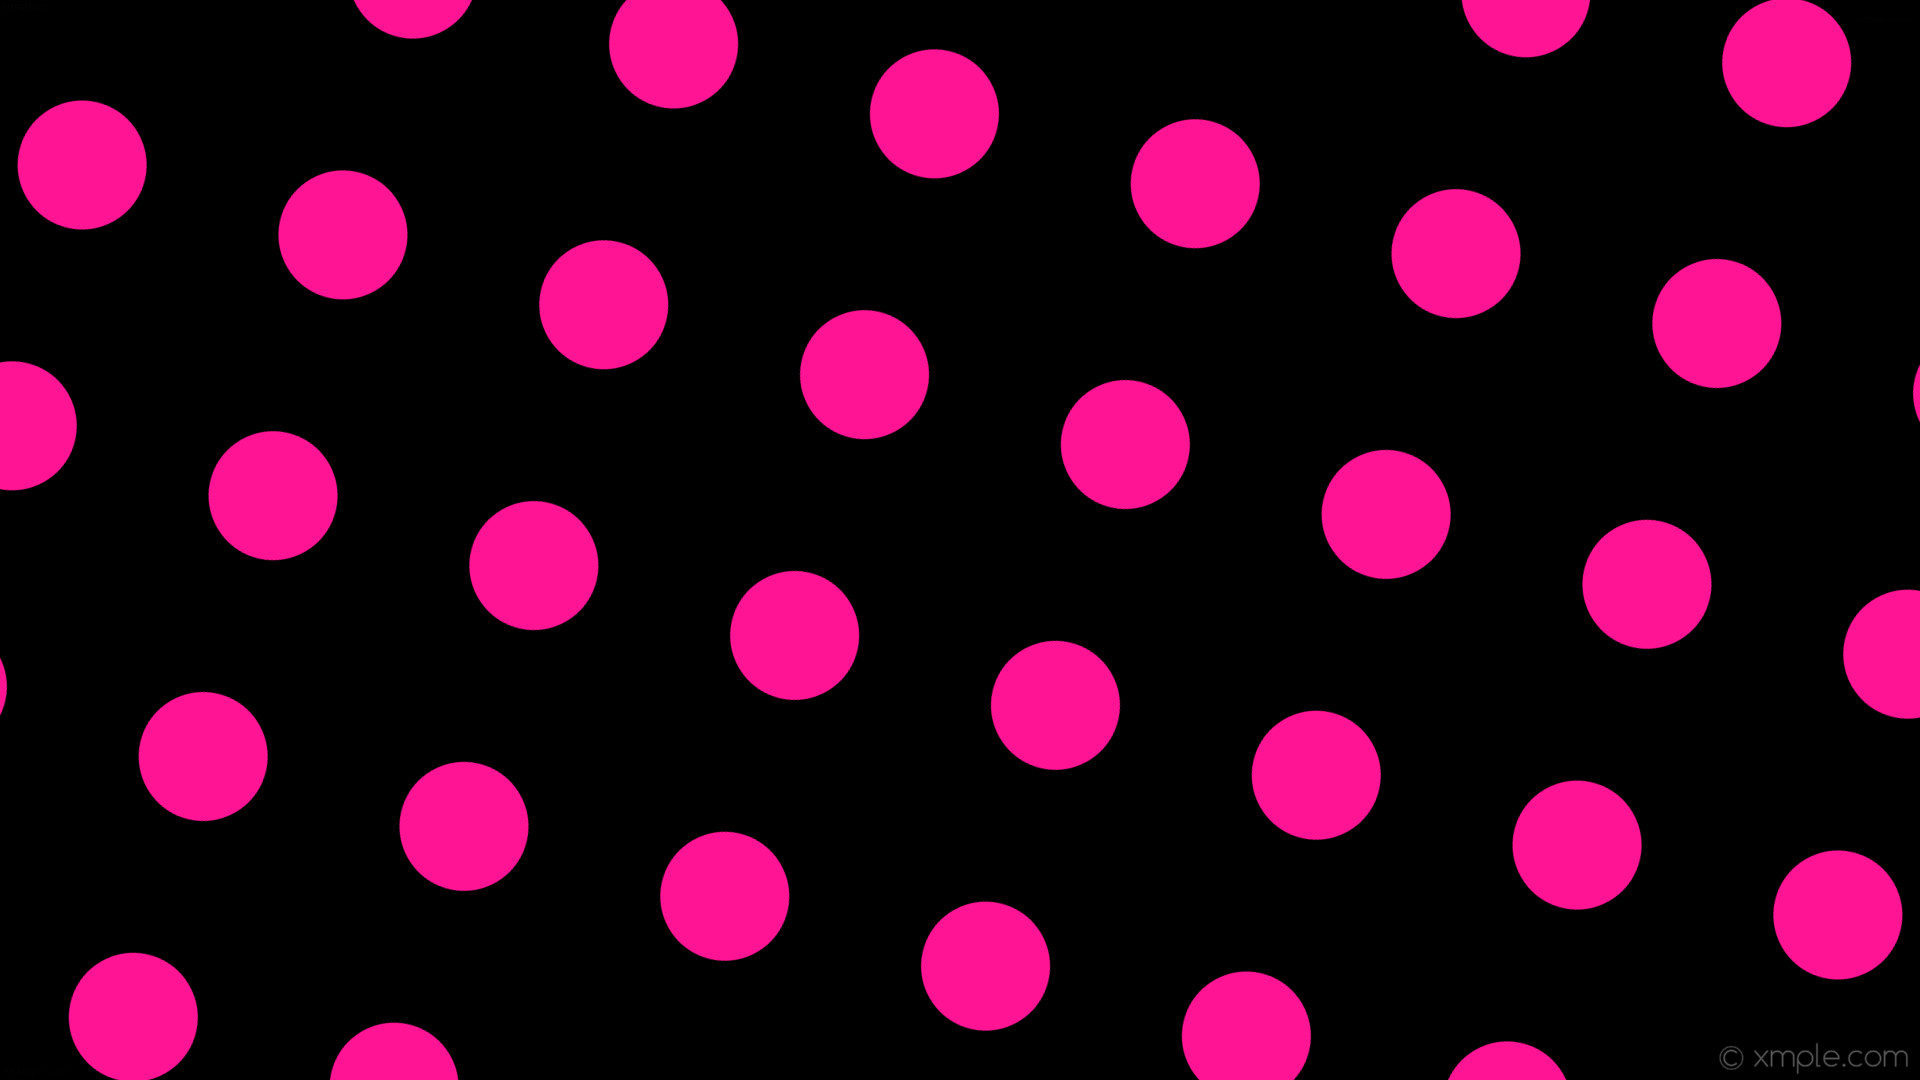 1920x1080 Wallpaper dots black spots pink polka #000000 #db7093 60? 129px 175px